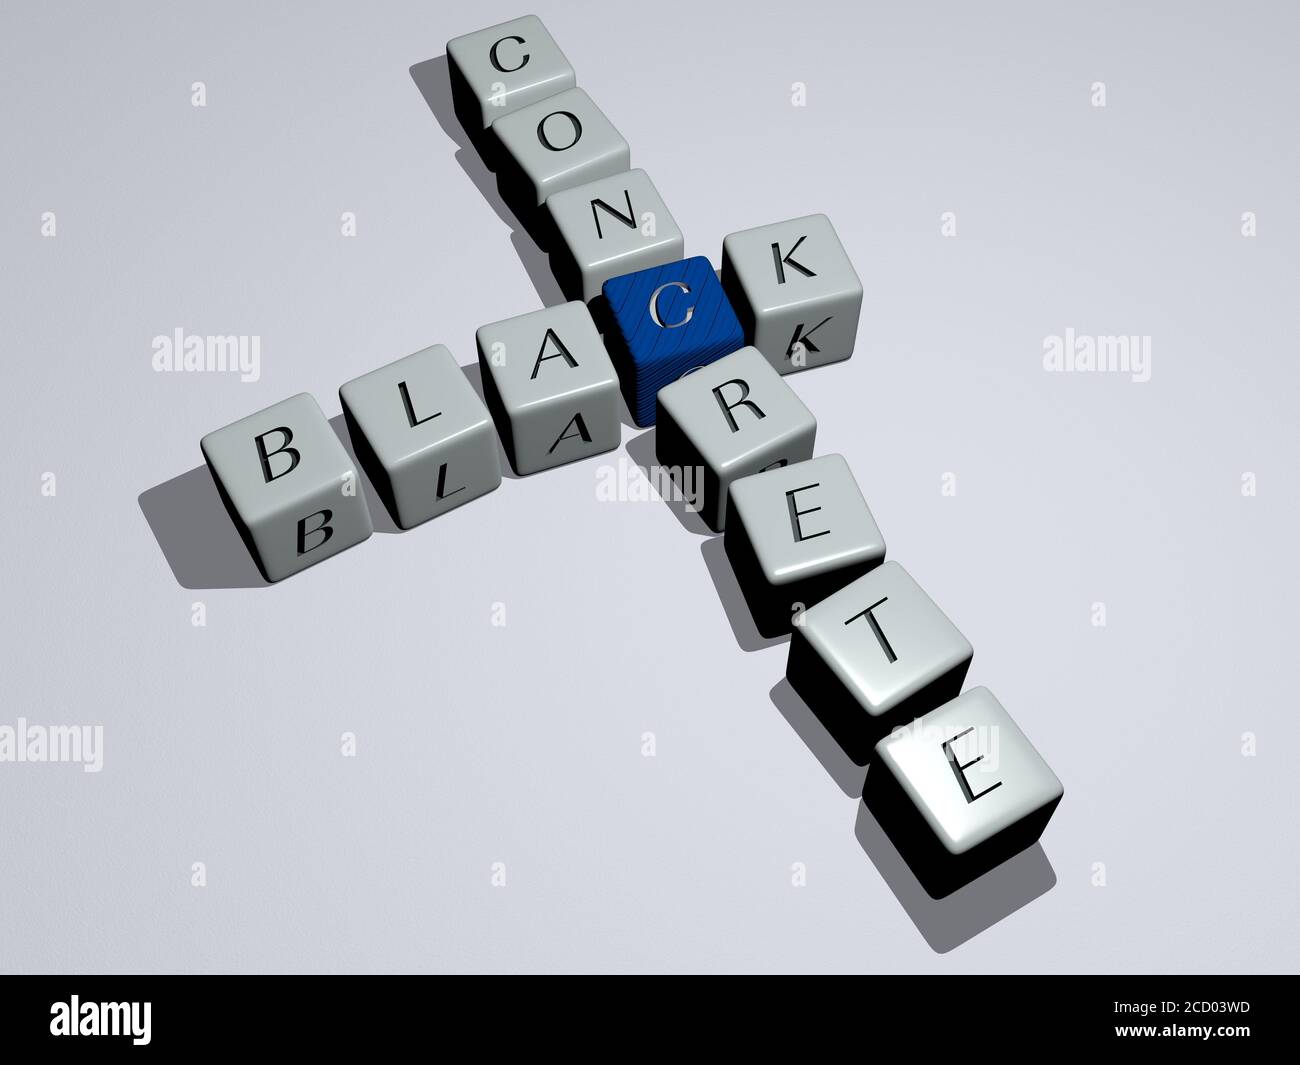 black concrete crossword by cubic dice letters 3D illustration Stock